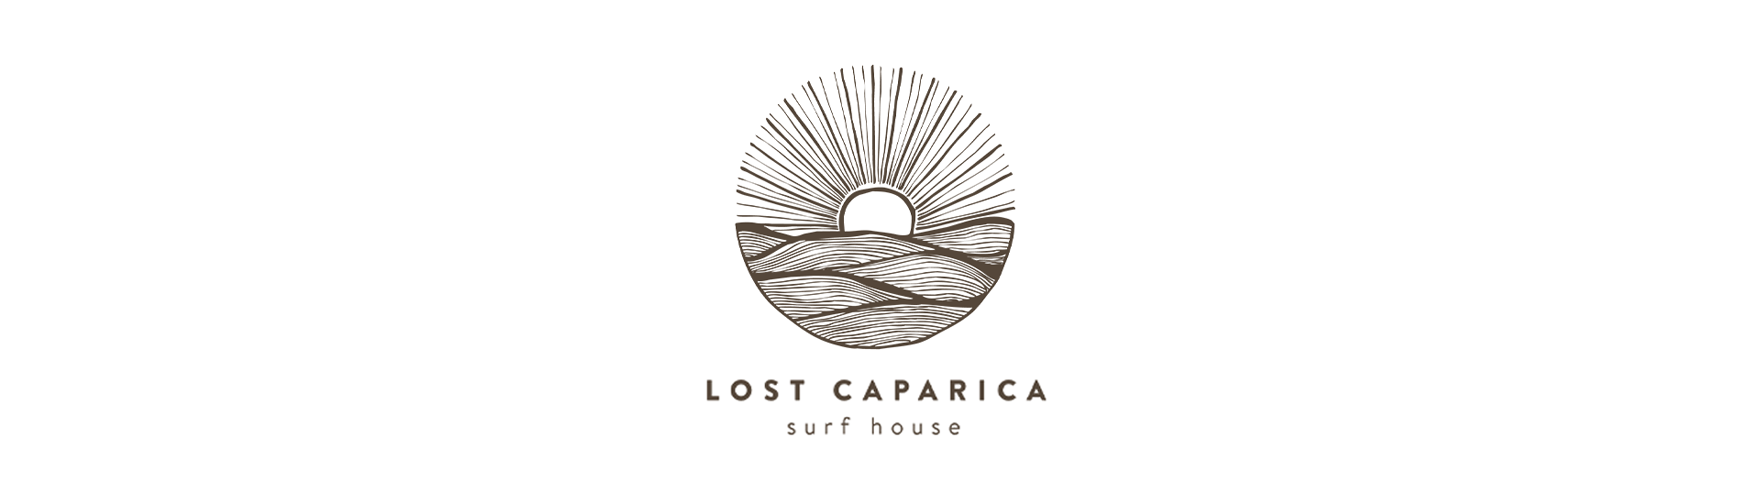 lost caparica logo